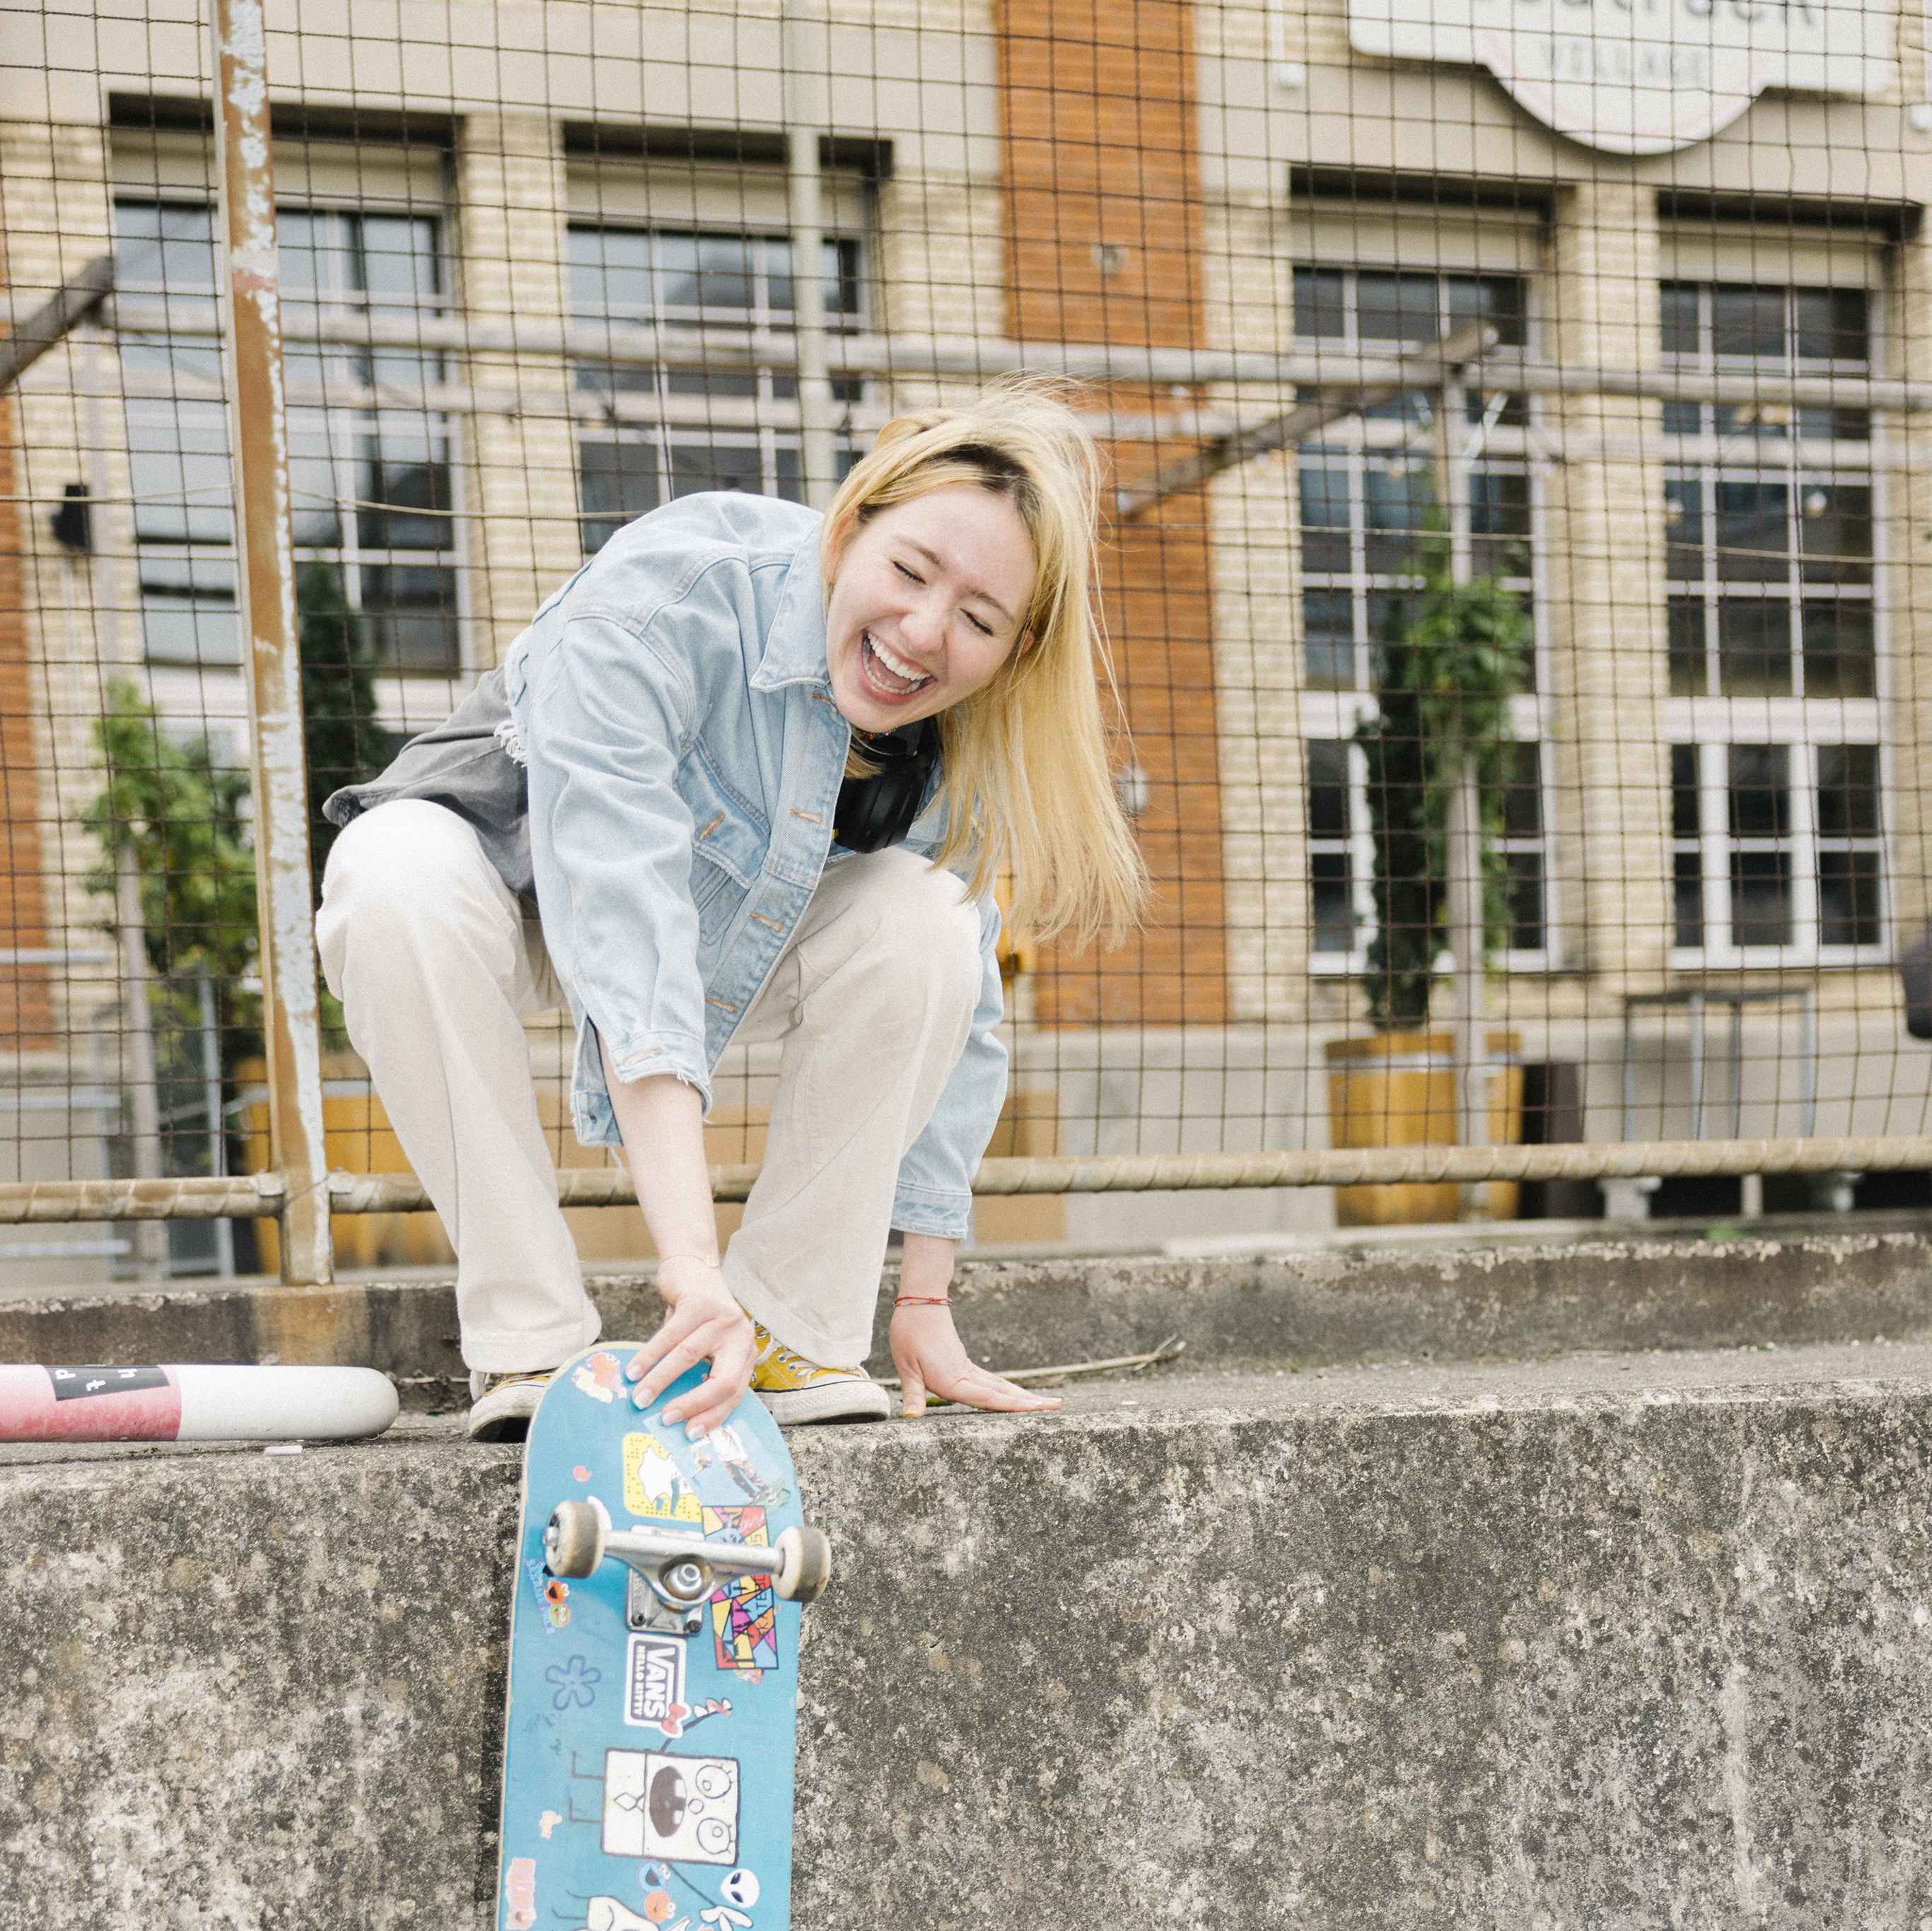 Une adolescente accroupie sur un mur rit en tenant son skateboard du bout des doigts.